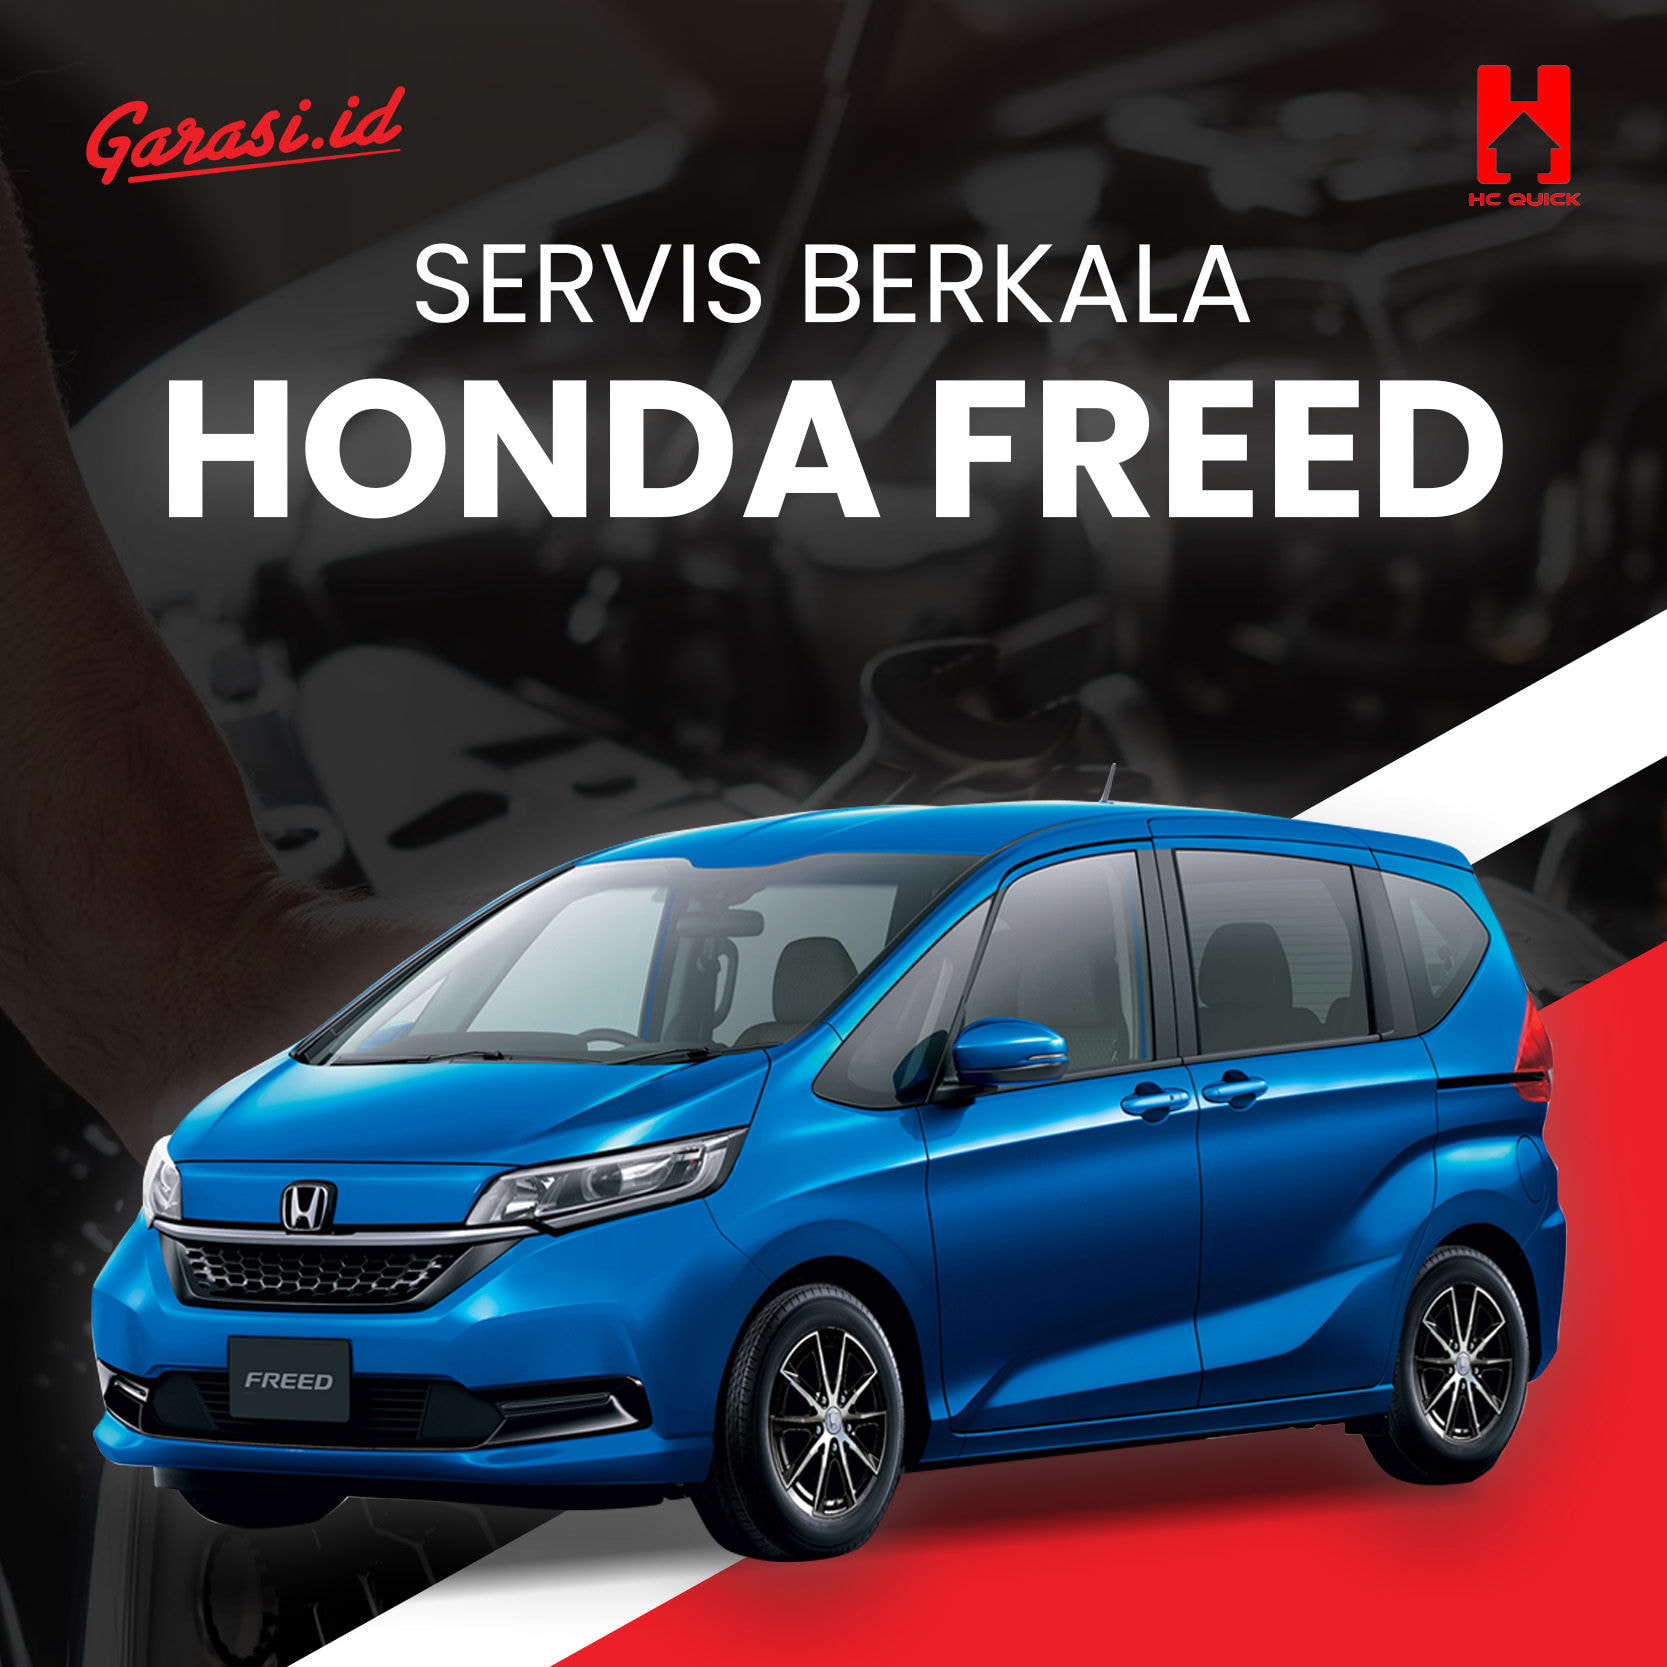 Paket perawatan service berkala Honda Freed